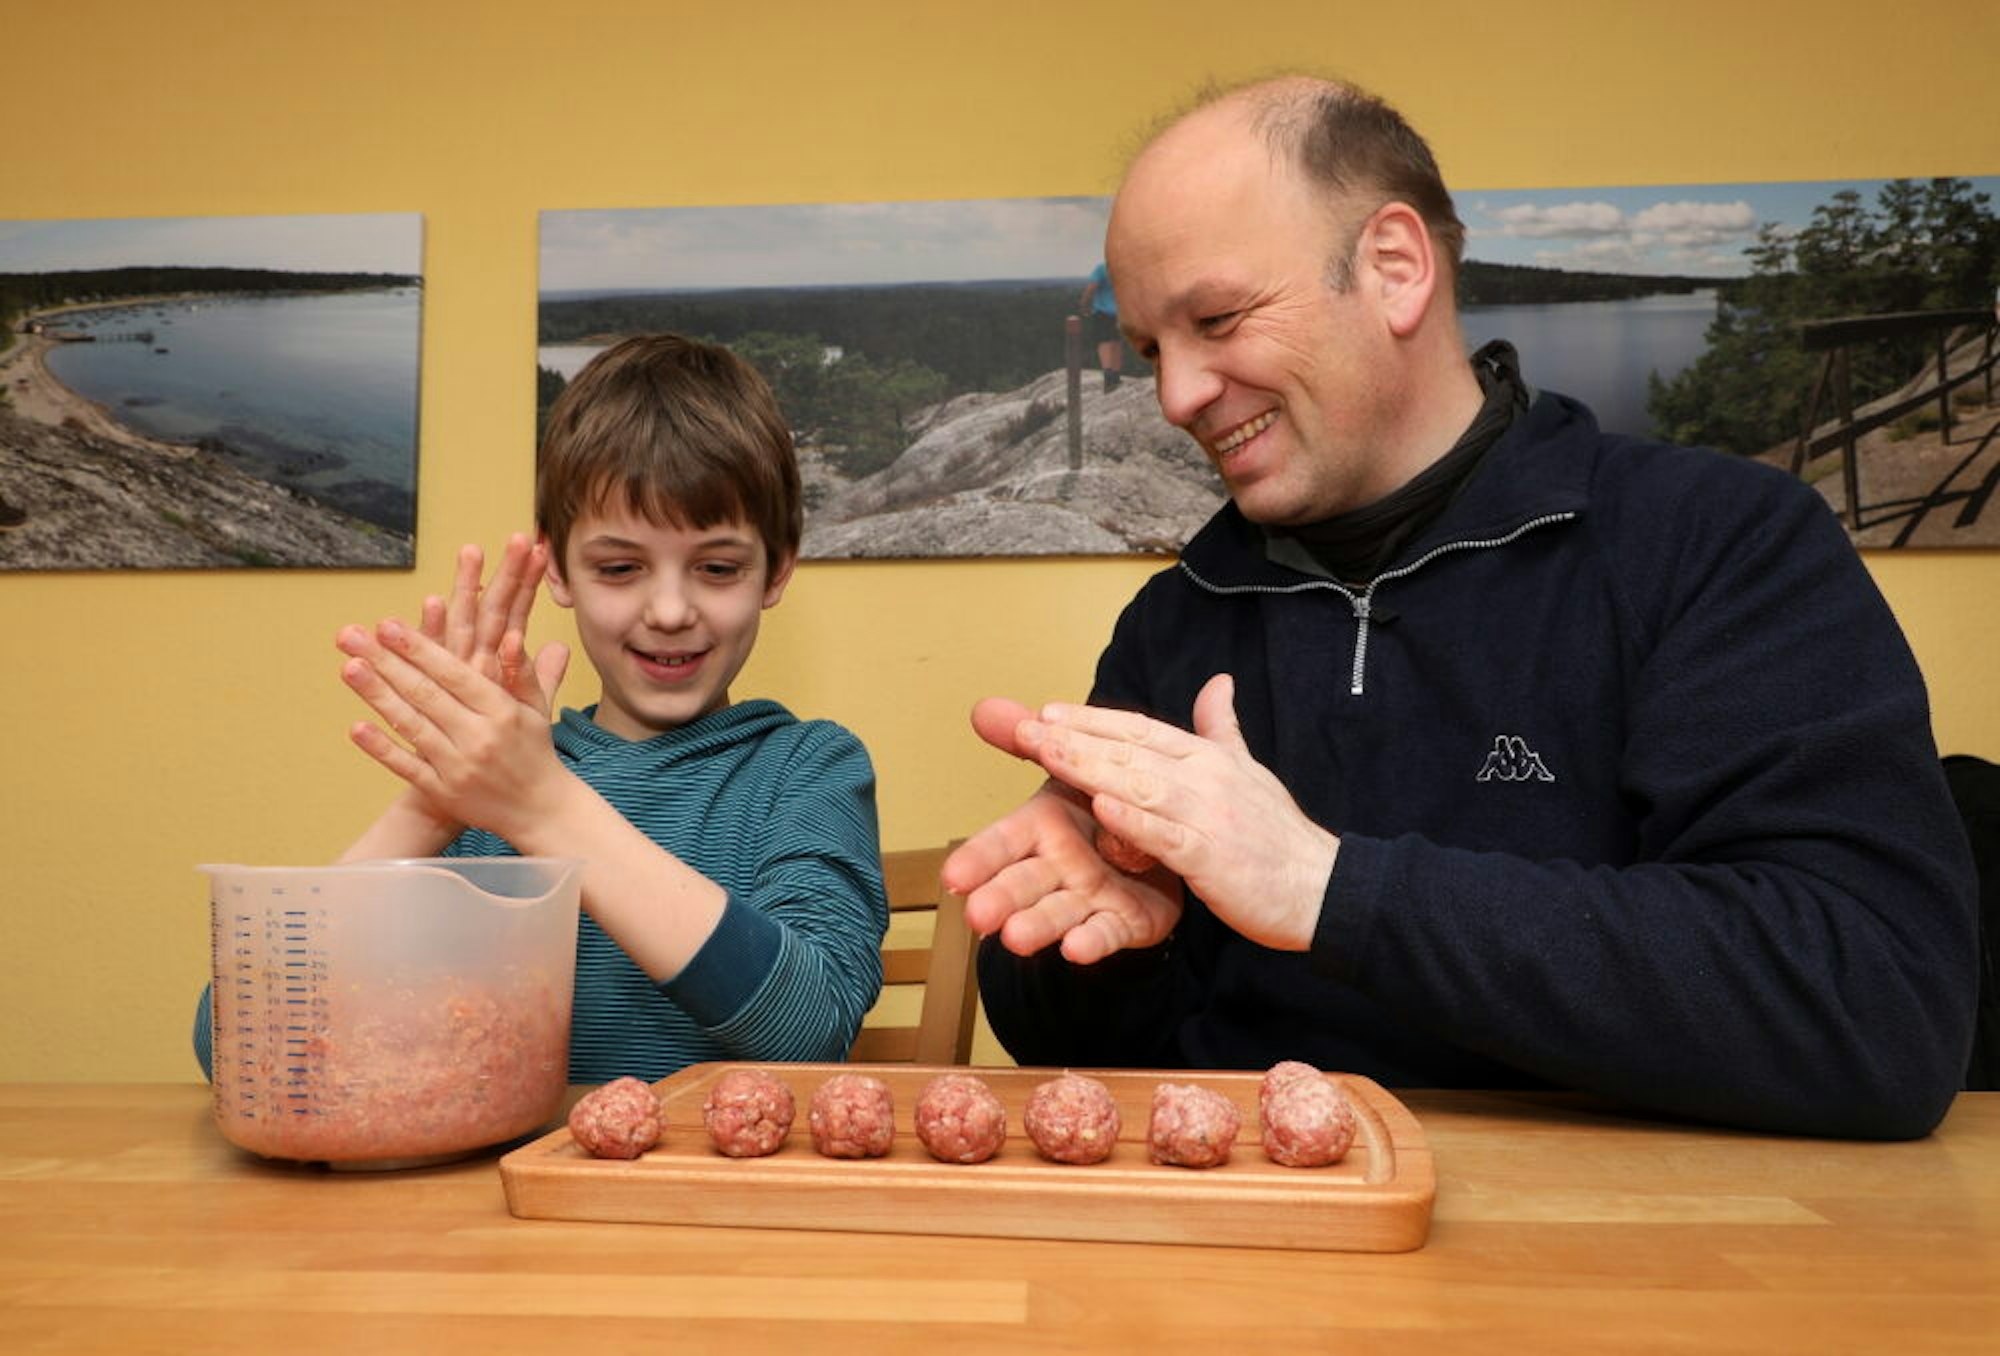 Einen Hauch von Freiheit und Abenteuer holen Guido Wagner und sein Sohn Moritz aus Schweden in die Küche, wenn sie das Nationalgericht Köttbullar zubereiten, Bällchen aus Fleisch oder Gemüse.